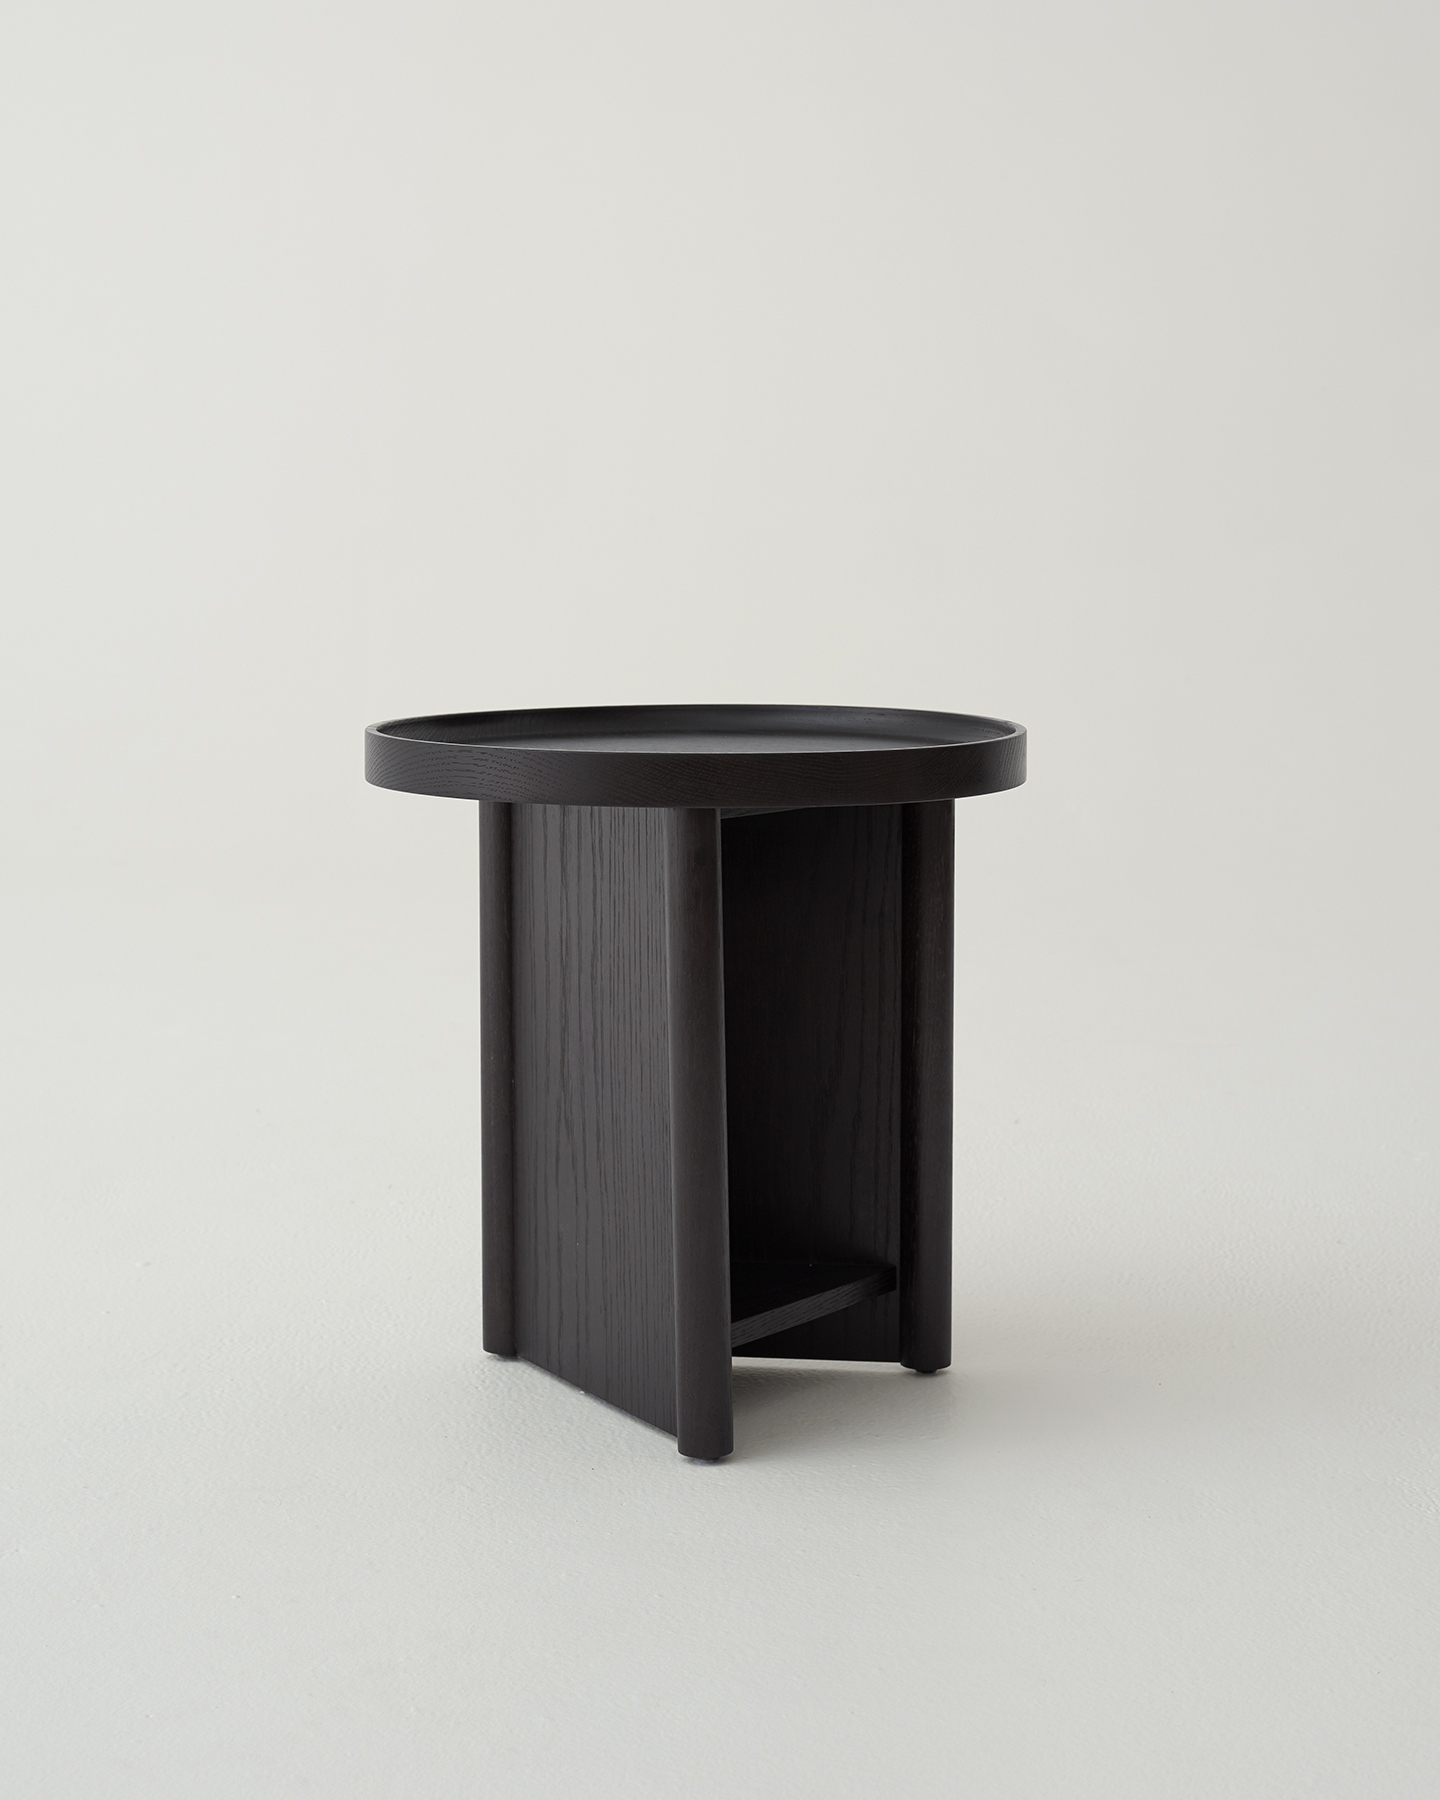 Furniture by Daniel Boddam 1